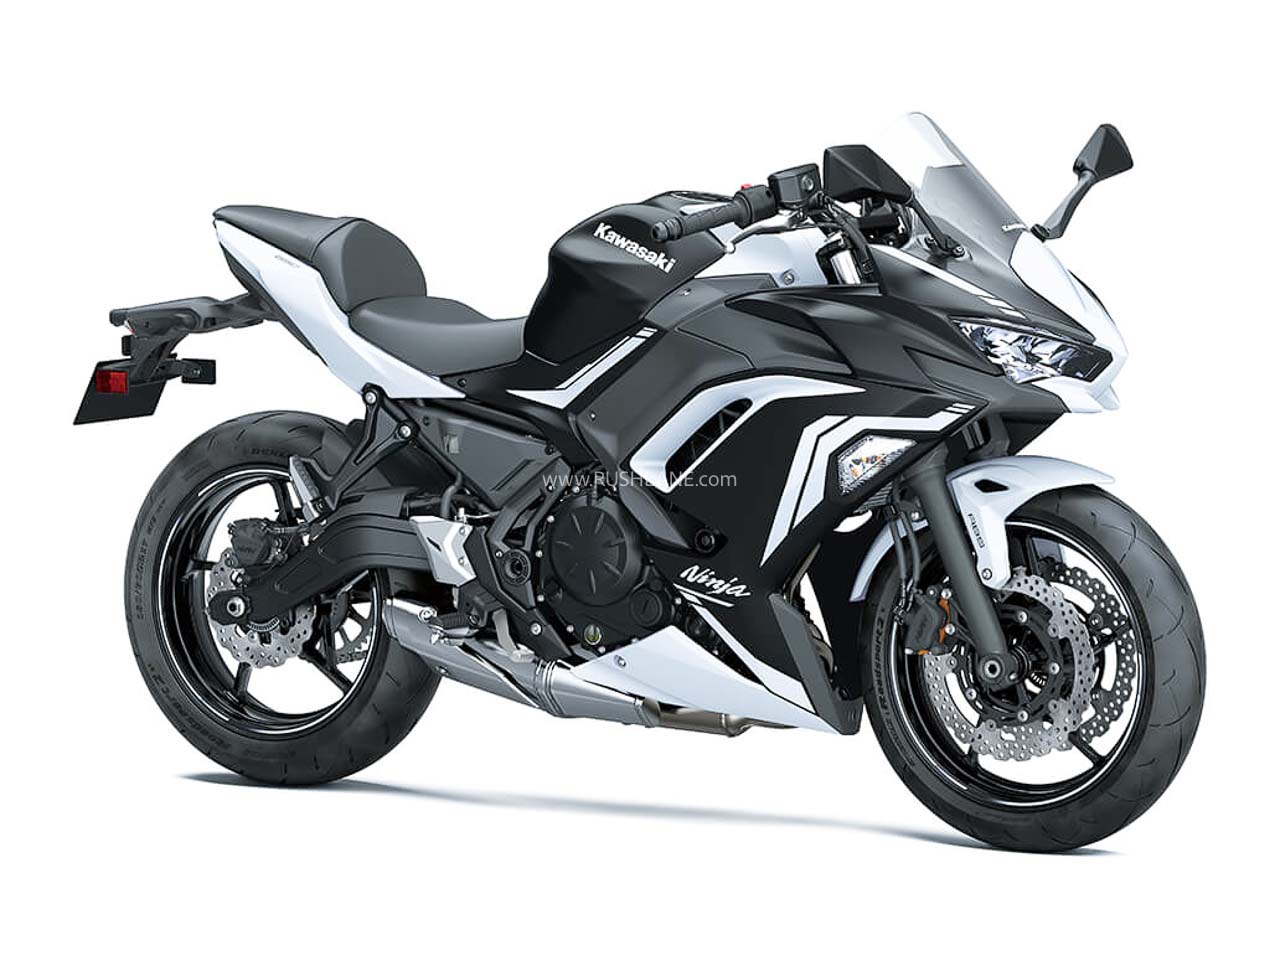 New Kawasaki Ninja 650 launch price Rs 6.24 L Two colour options